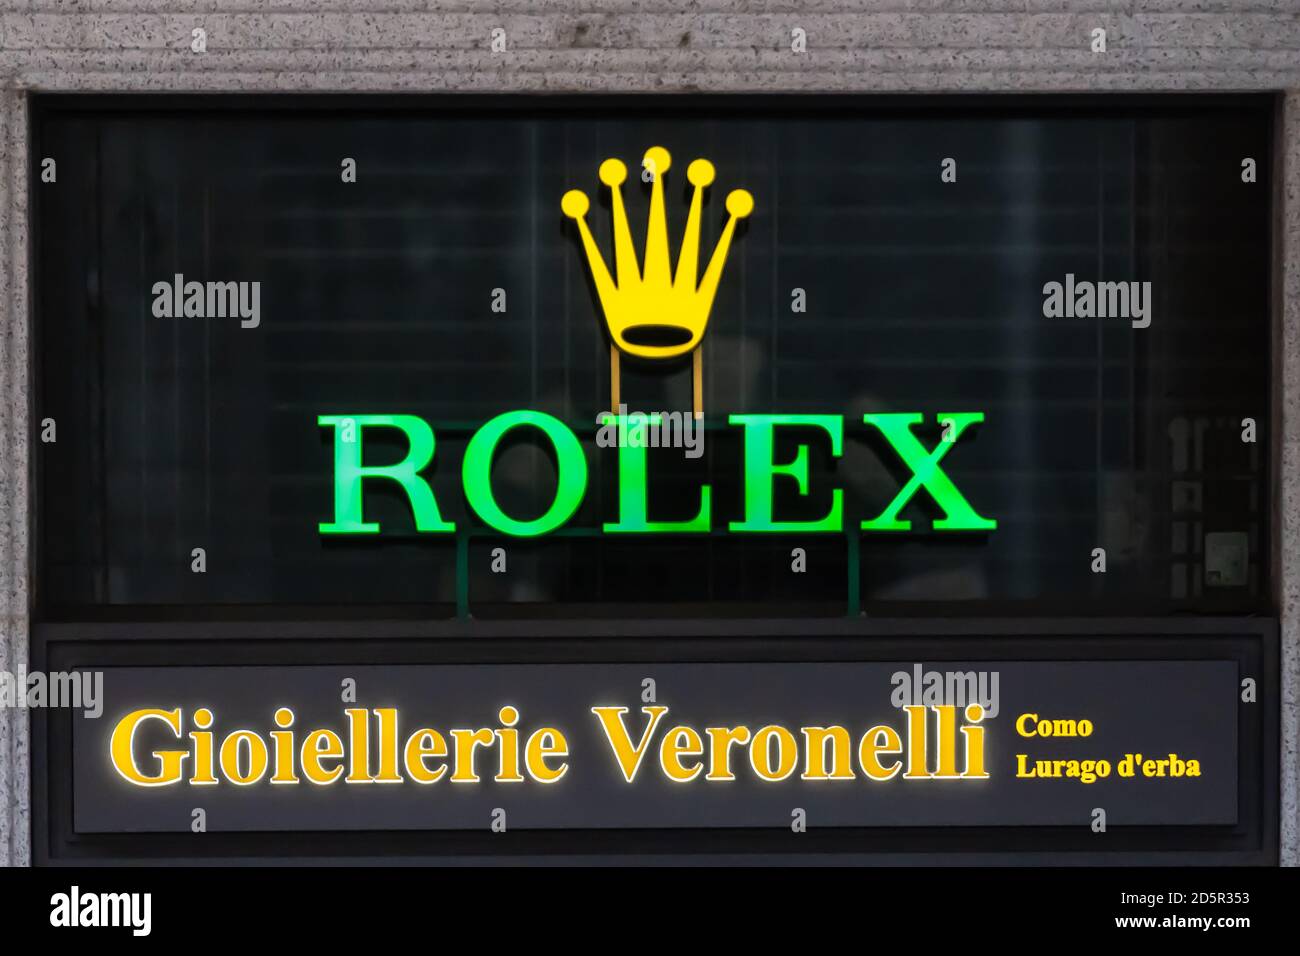 Logotipo de la Marca Rolex en el exterior de una tienda. Rolex es un  fabricante suizo de relojes de lujo con sede en Ginebra. Como, Italia -  10.11.2019 Fotografía de stock - Alamy